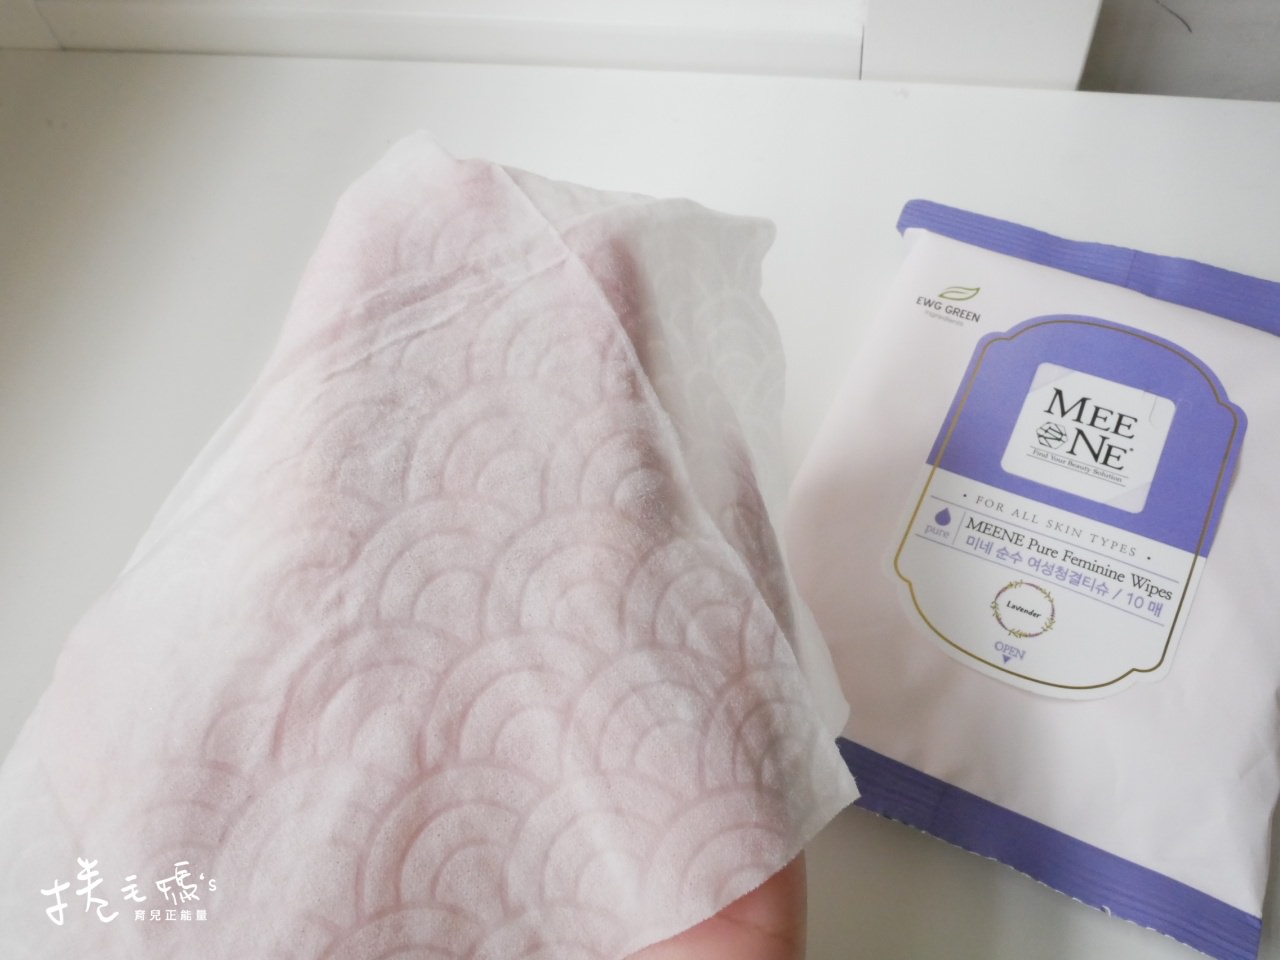 嬰兒濕紙巾推薦 好用濕紙巾 韓國濕紙巾 厚濕紙巾 待產包P1060850